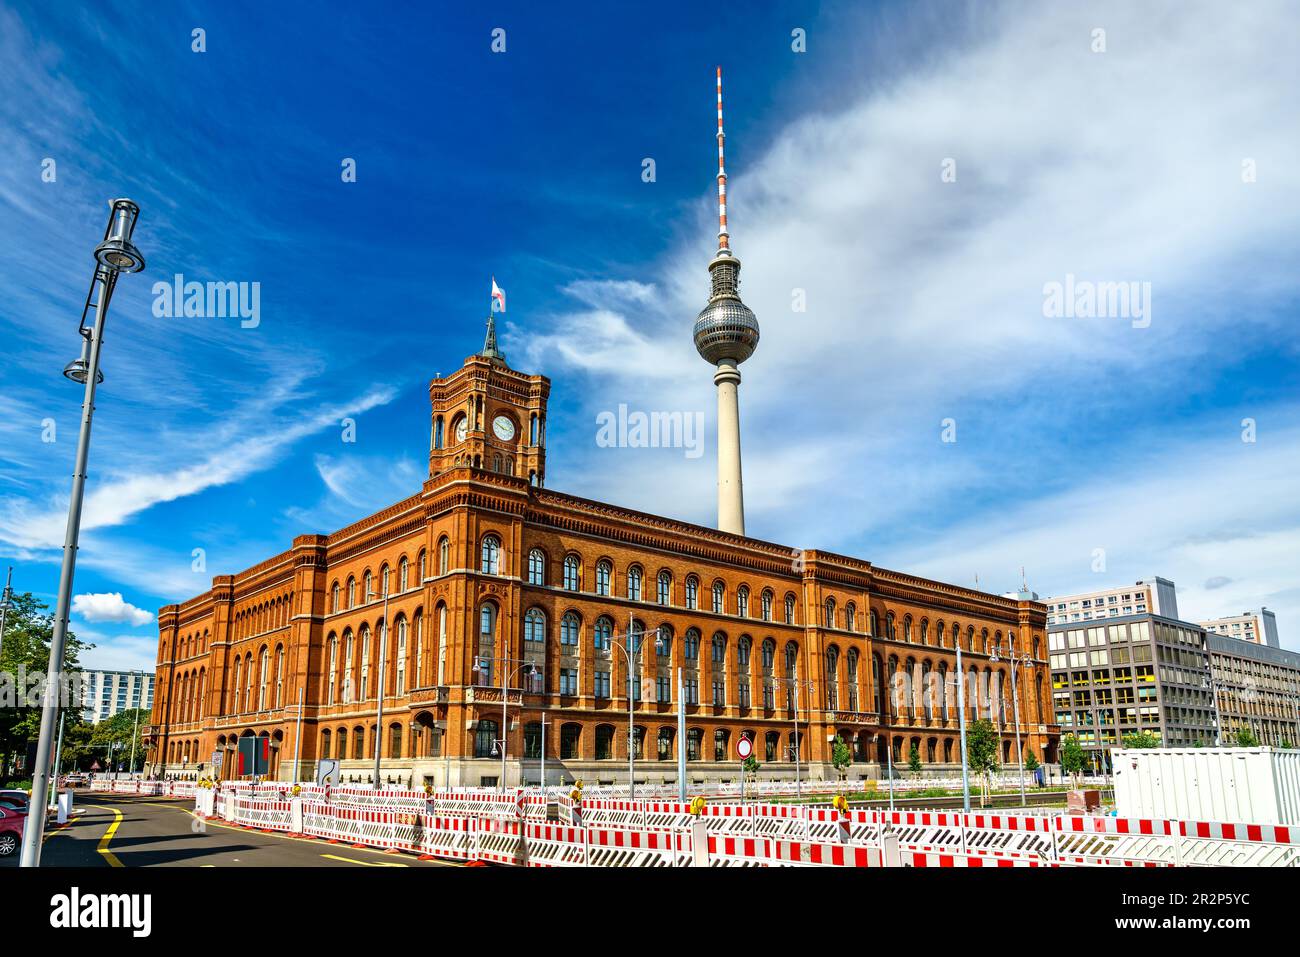 Rotes Rathaus, hôtel de ville de Berlin avec tour de télévision en arrière-plan, Allemagne Banque D'Images